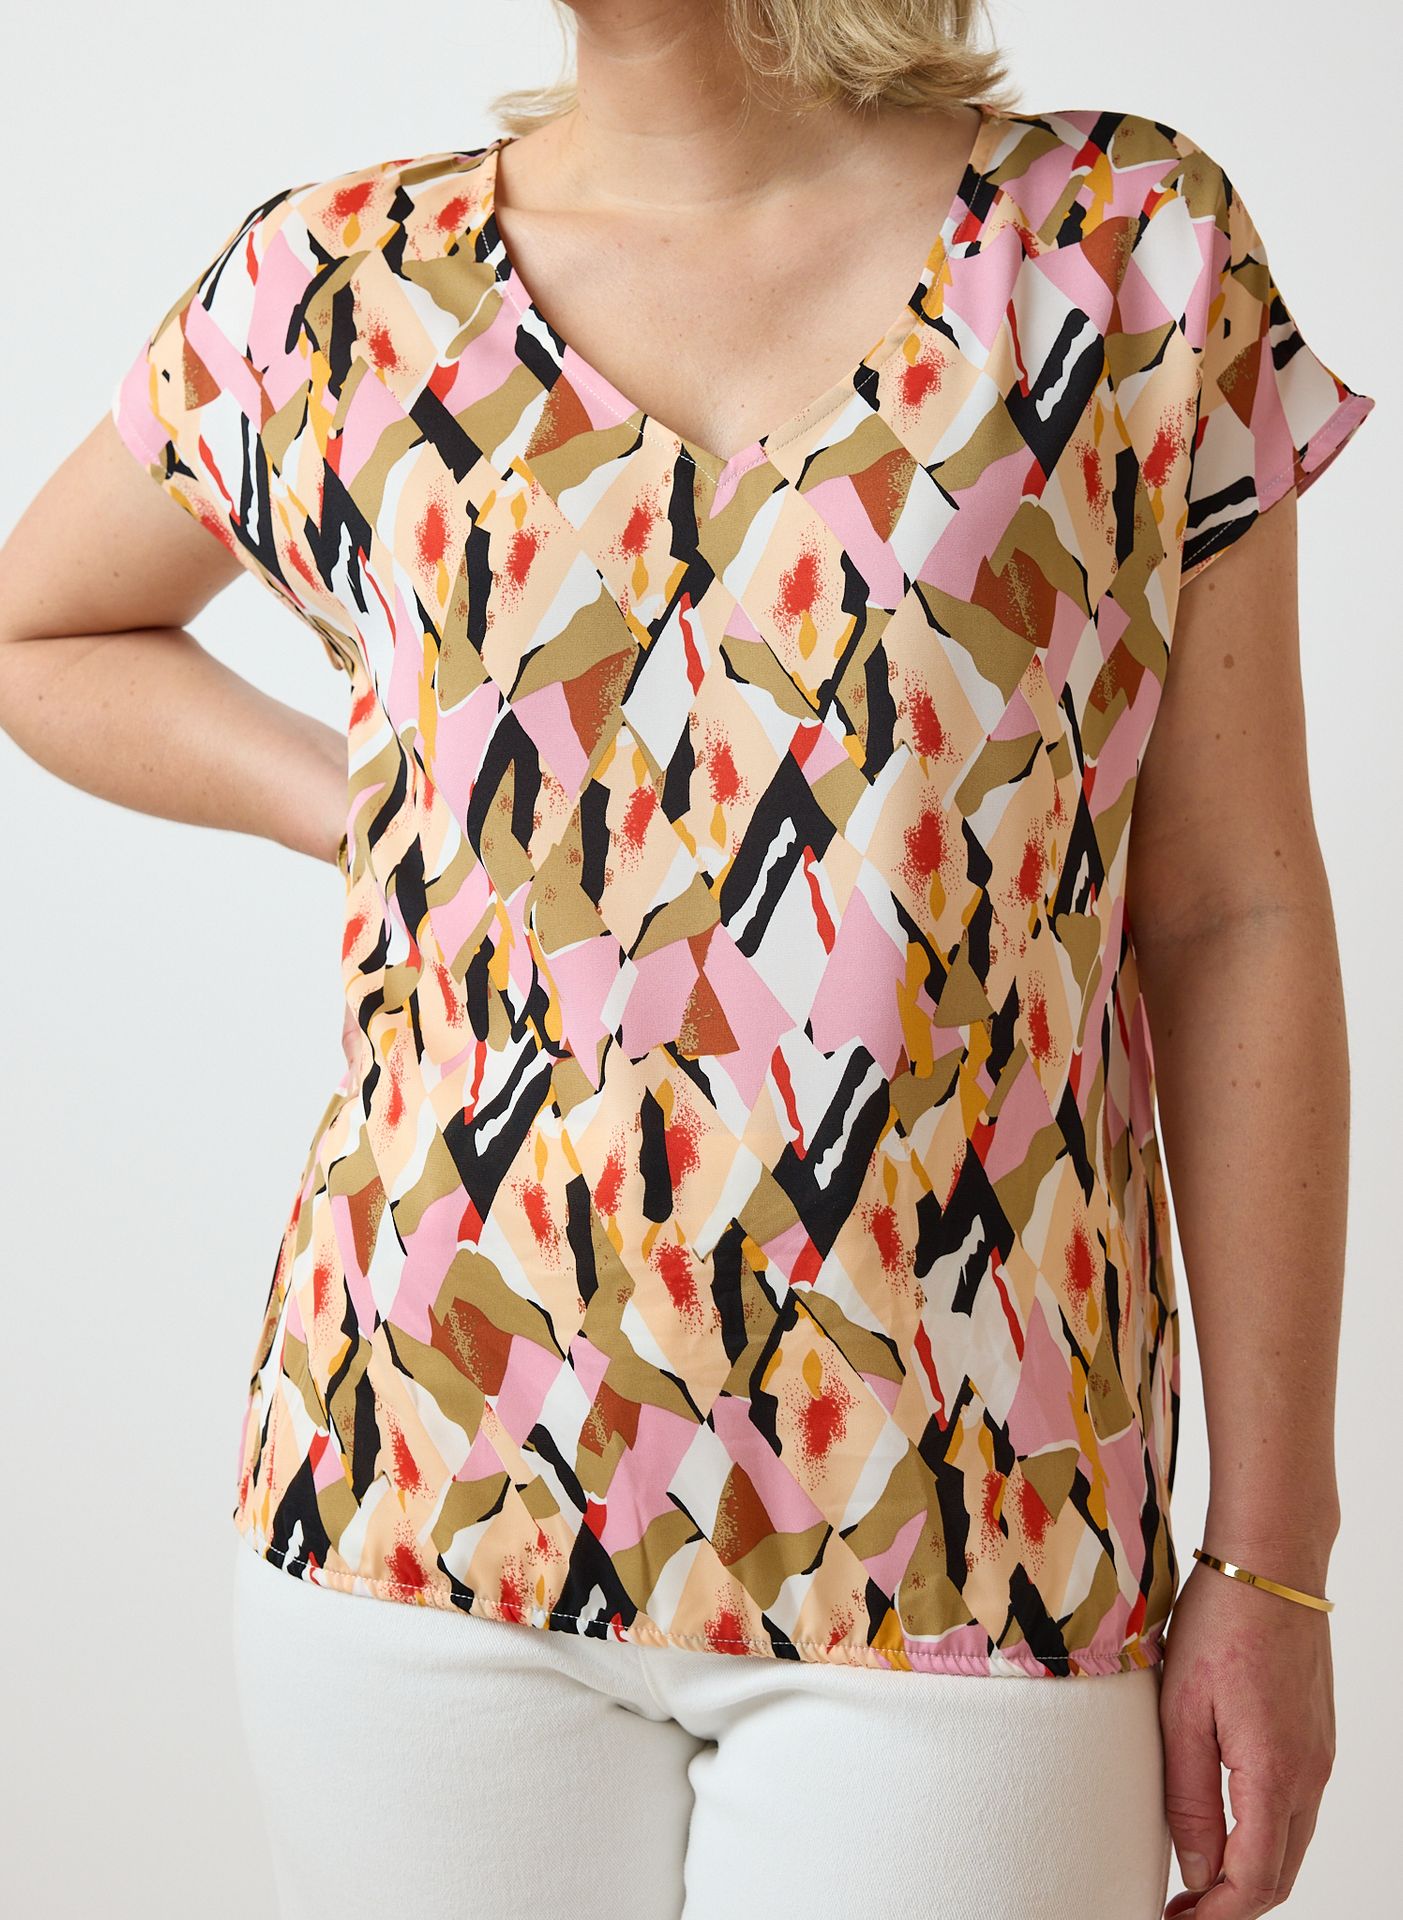 Norah Shirt met grafische print multicolor 214505-002